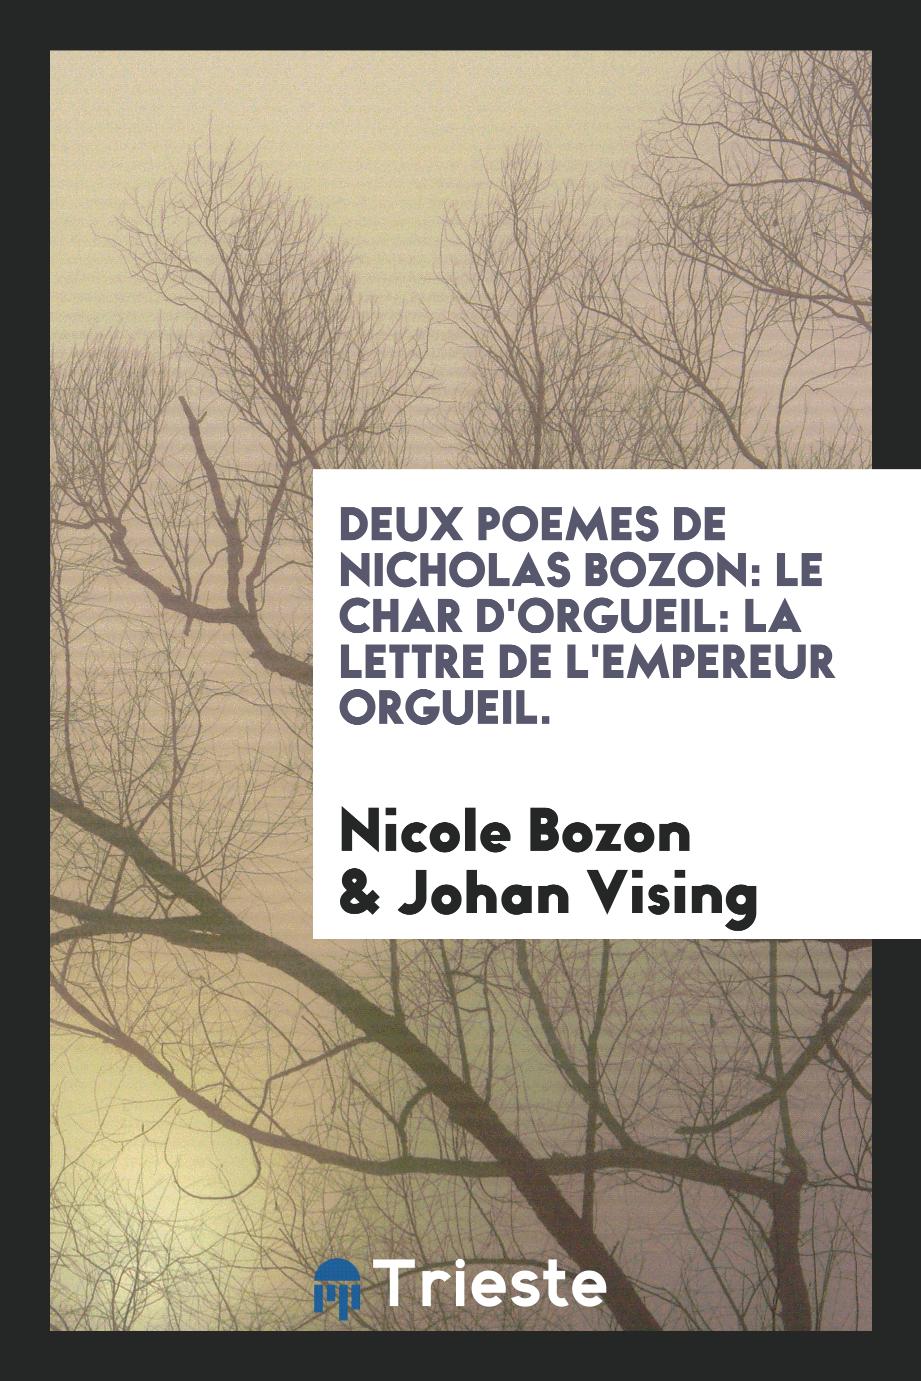 Deux poemes de Nicholas bozon: Le char d'Orgueil: La lettre de l'empereur Orgueil.